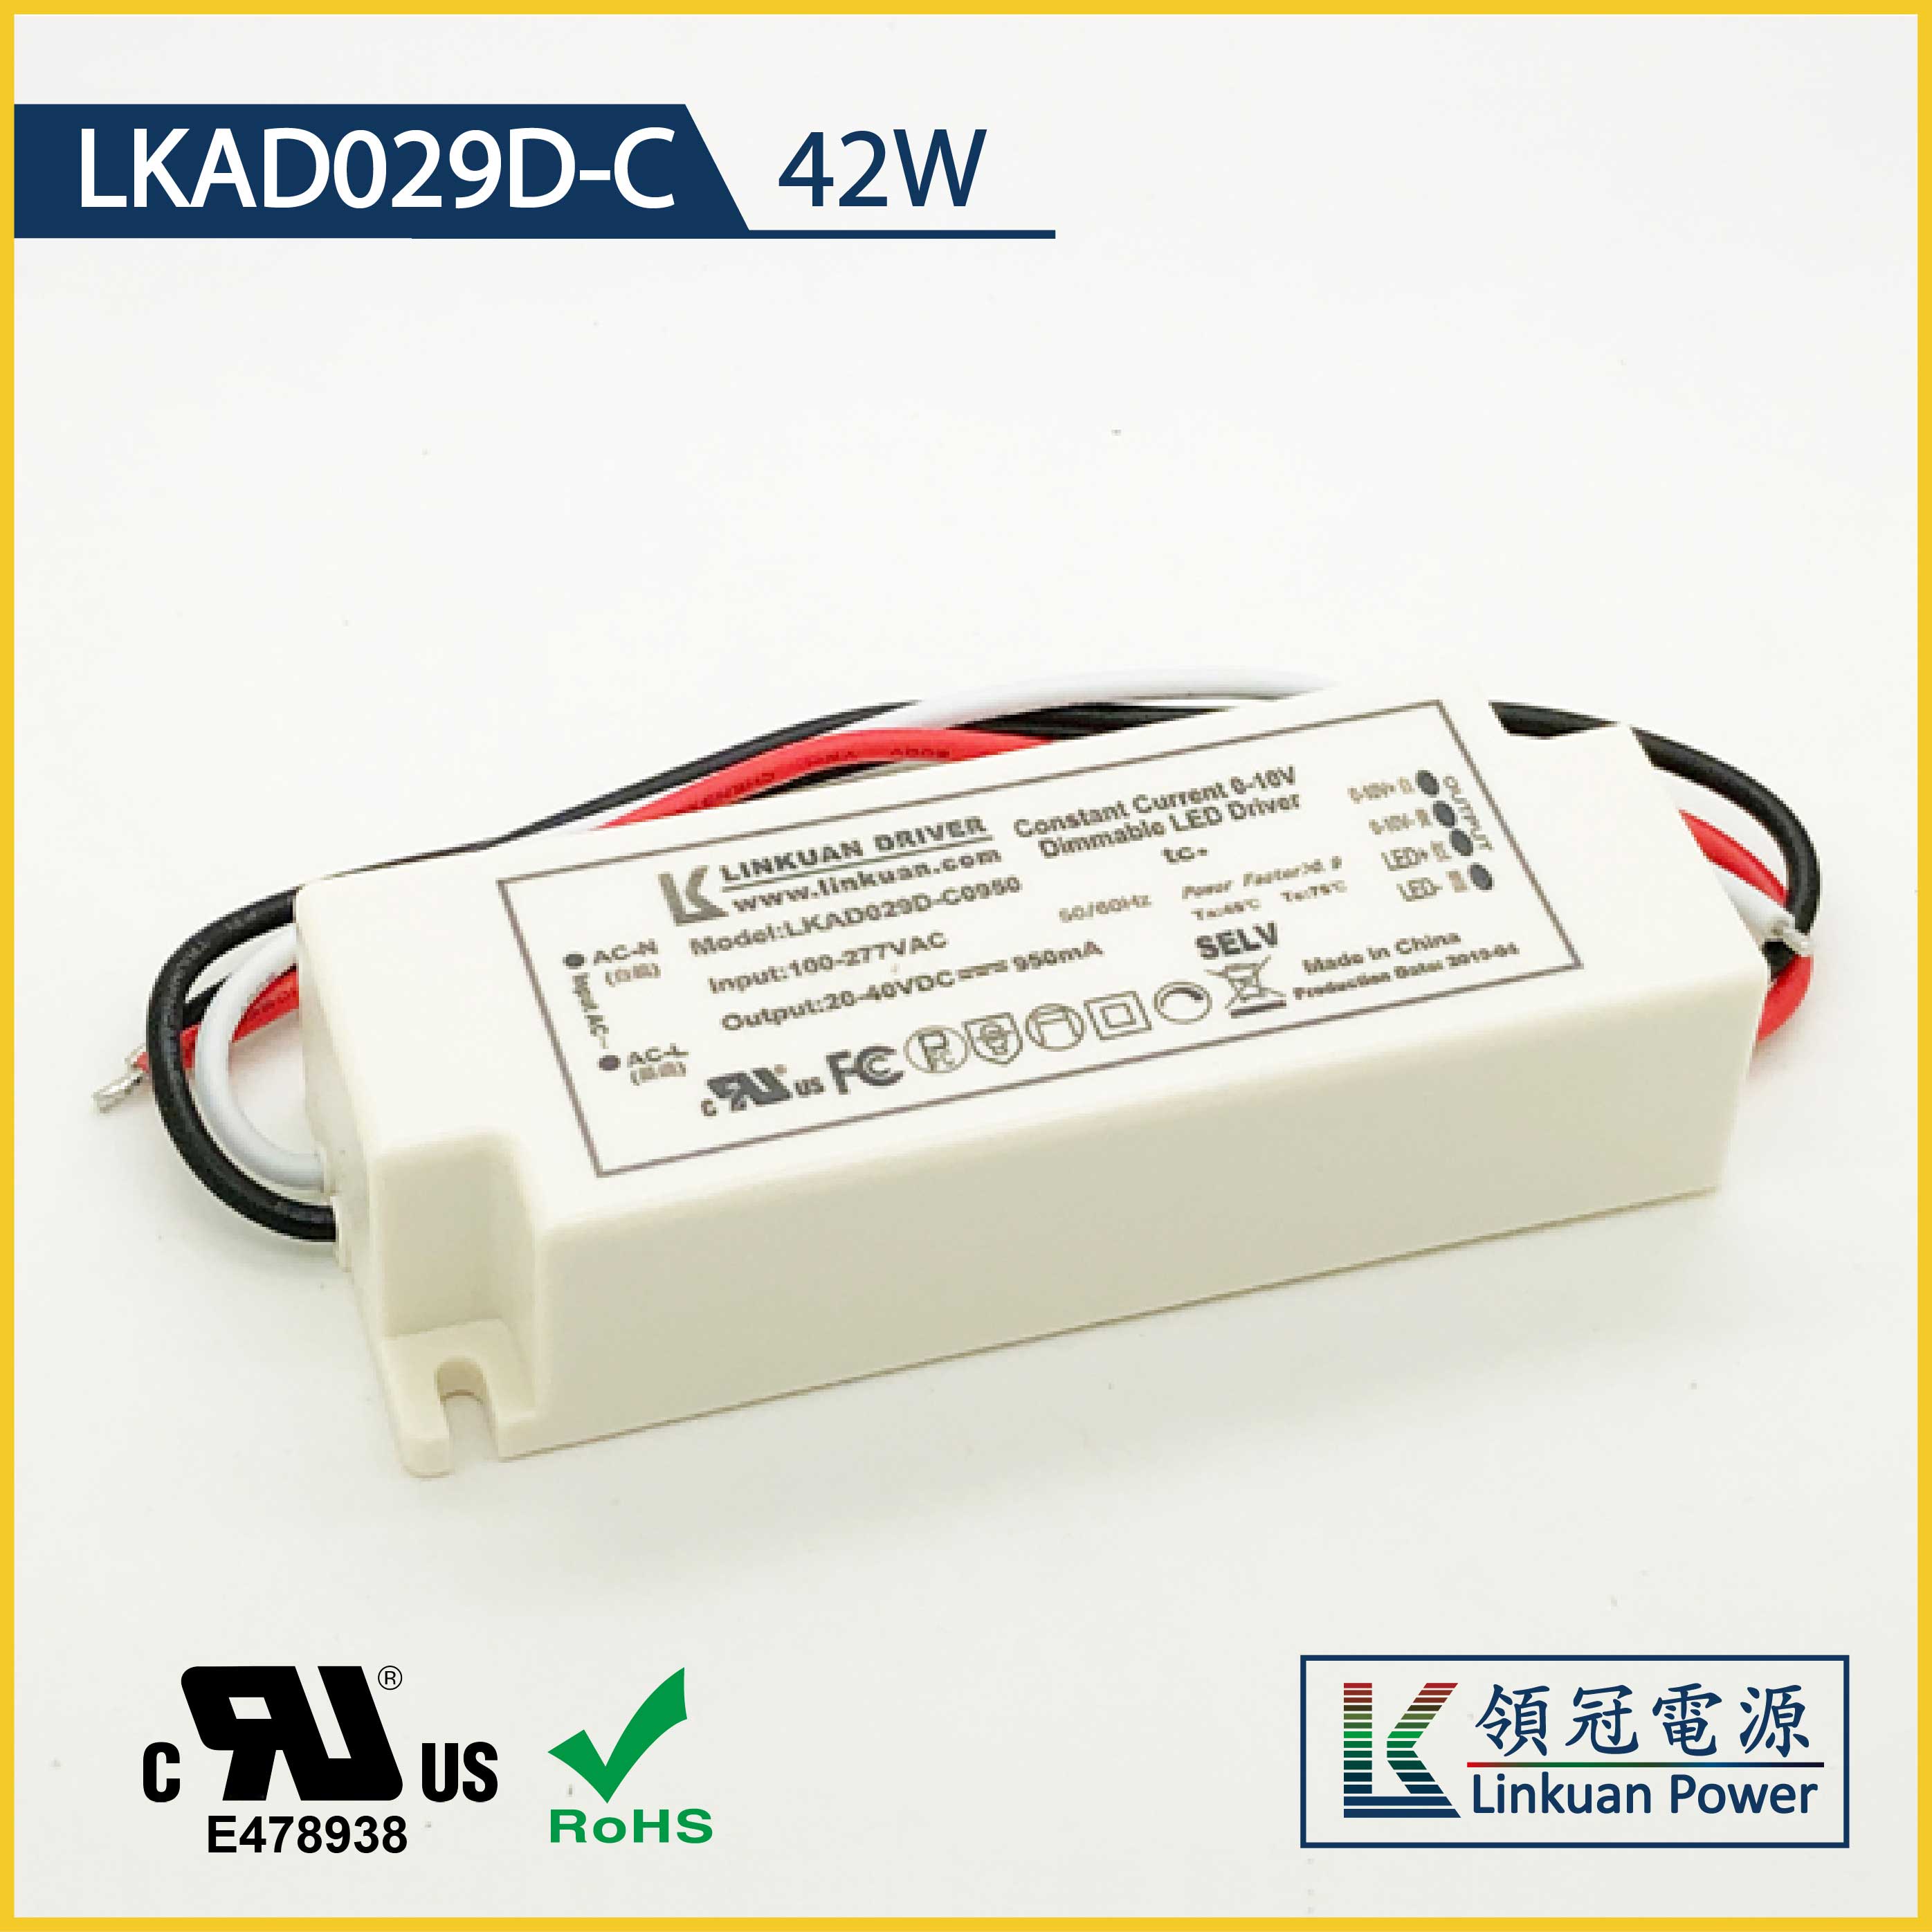 LKAD029D-C 42W 20-55V 750mA 0-10V Dimming LED drivers